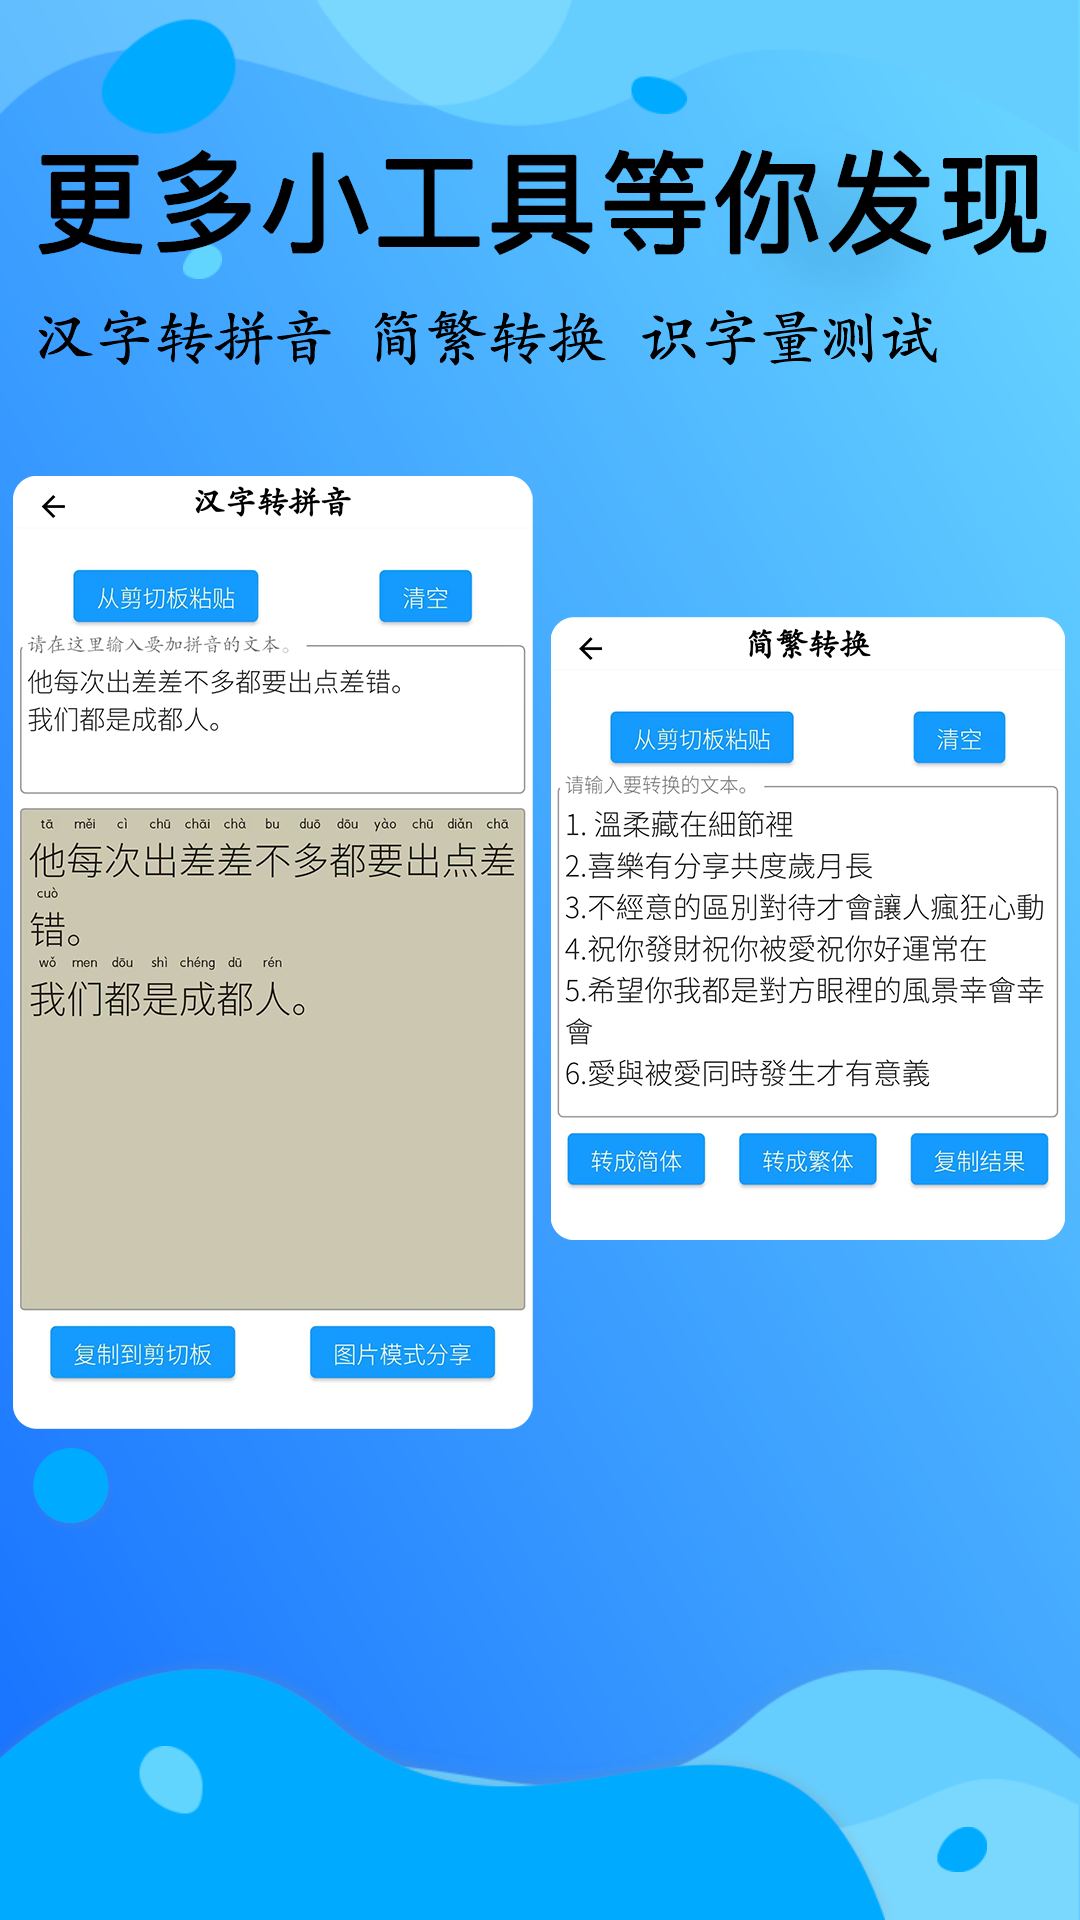 简明汉语字典v1.10.0截图1